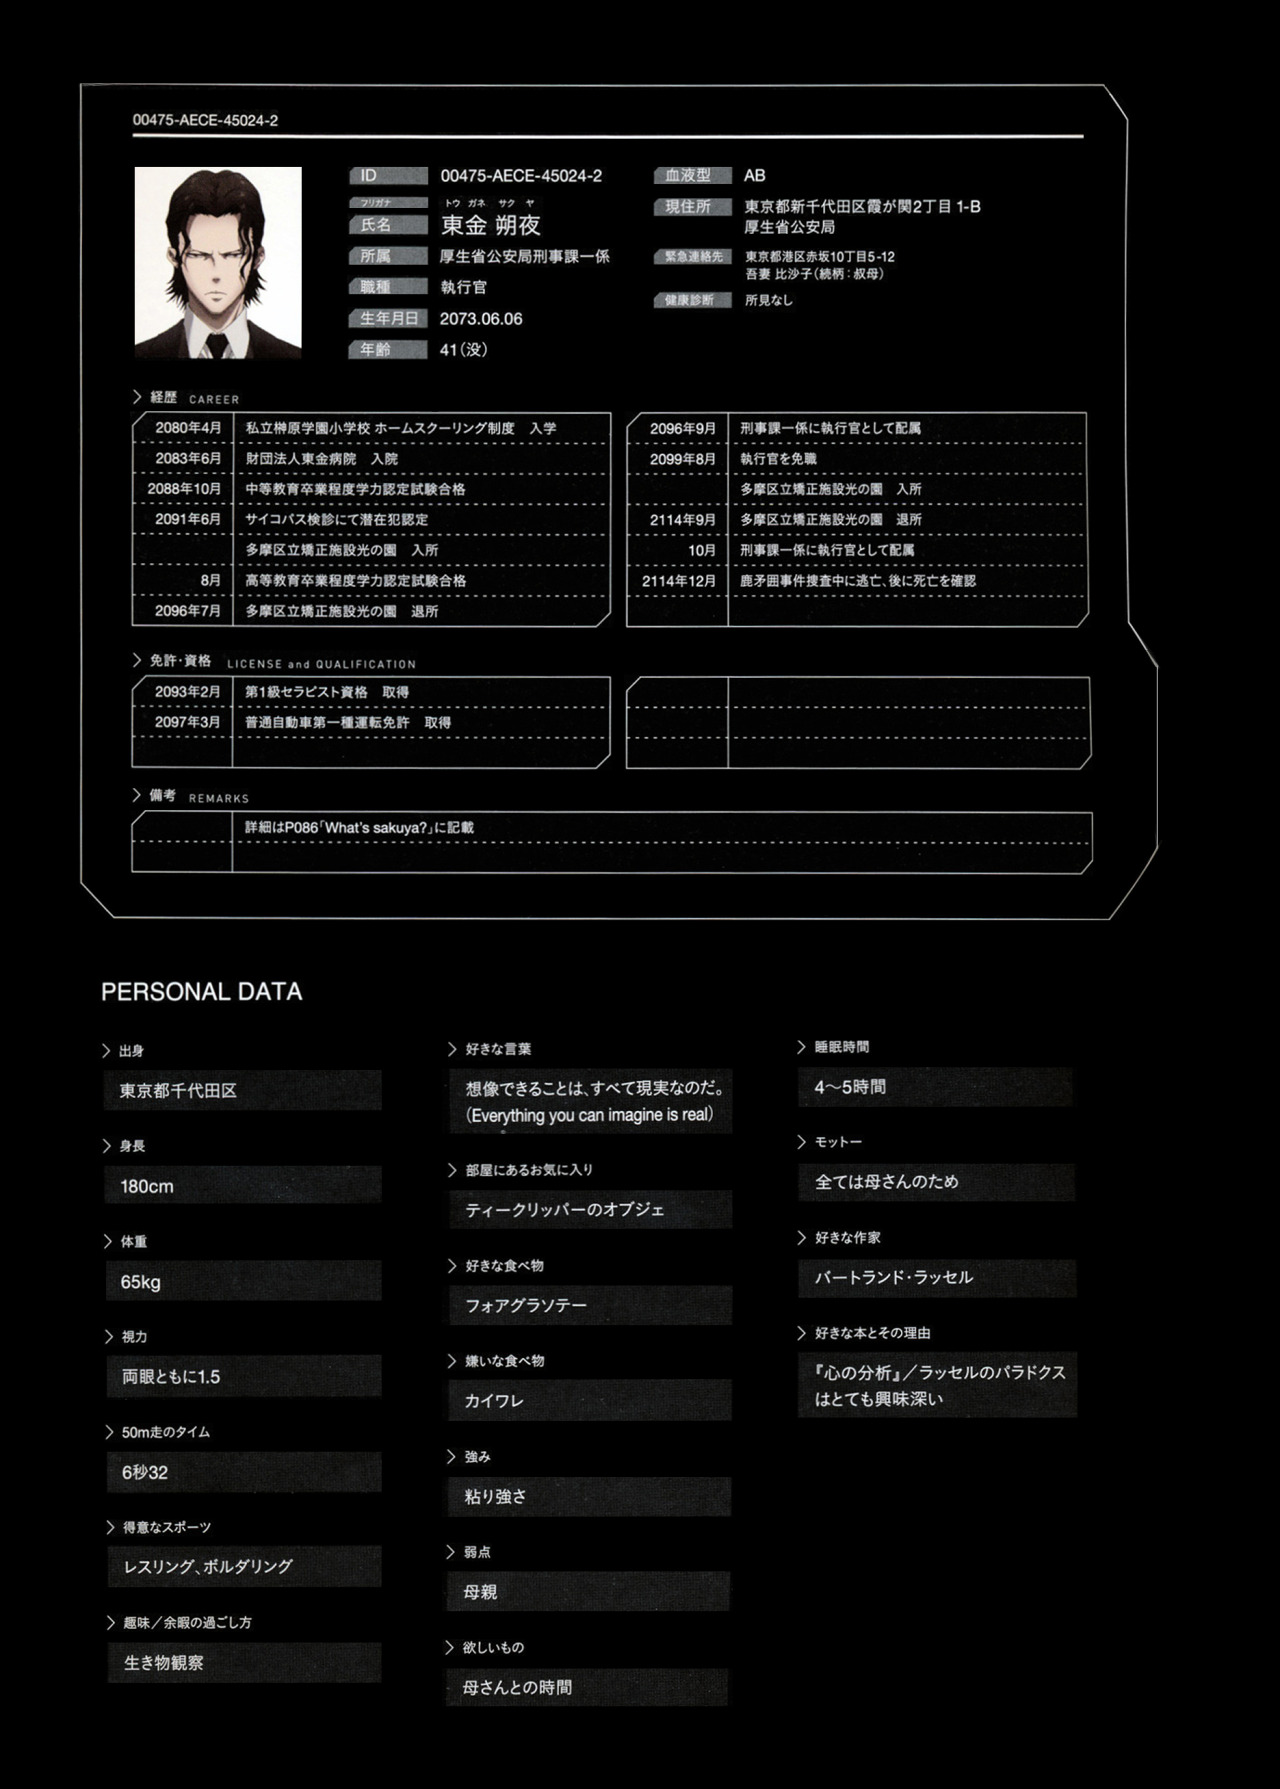 鉛の空 Translation Psycho Pass Official Profiling 2